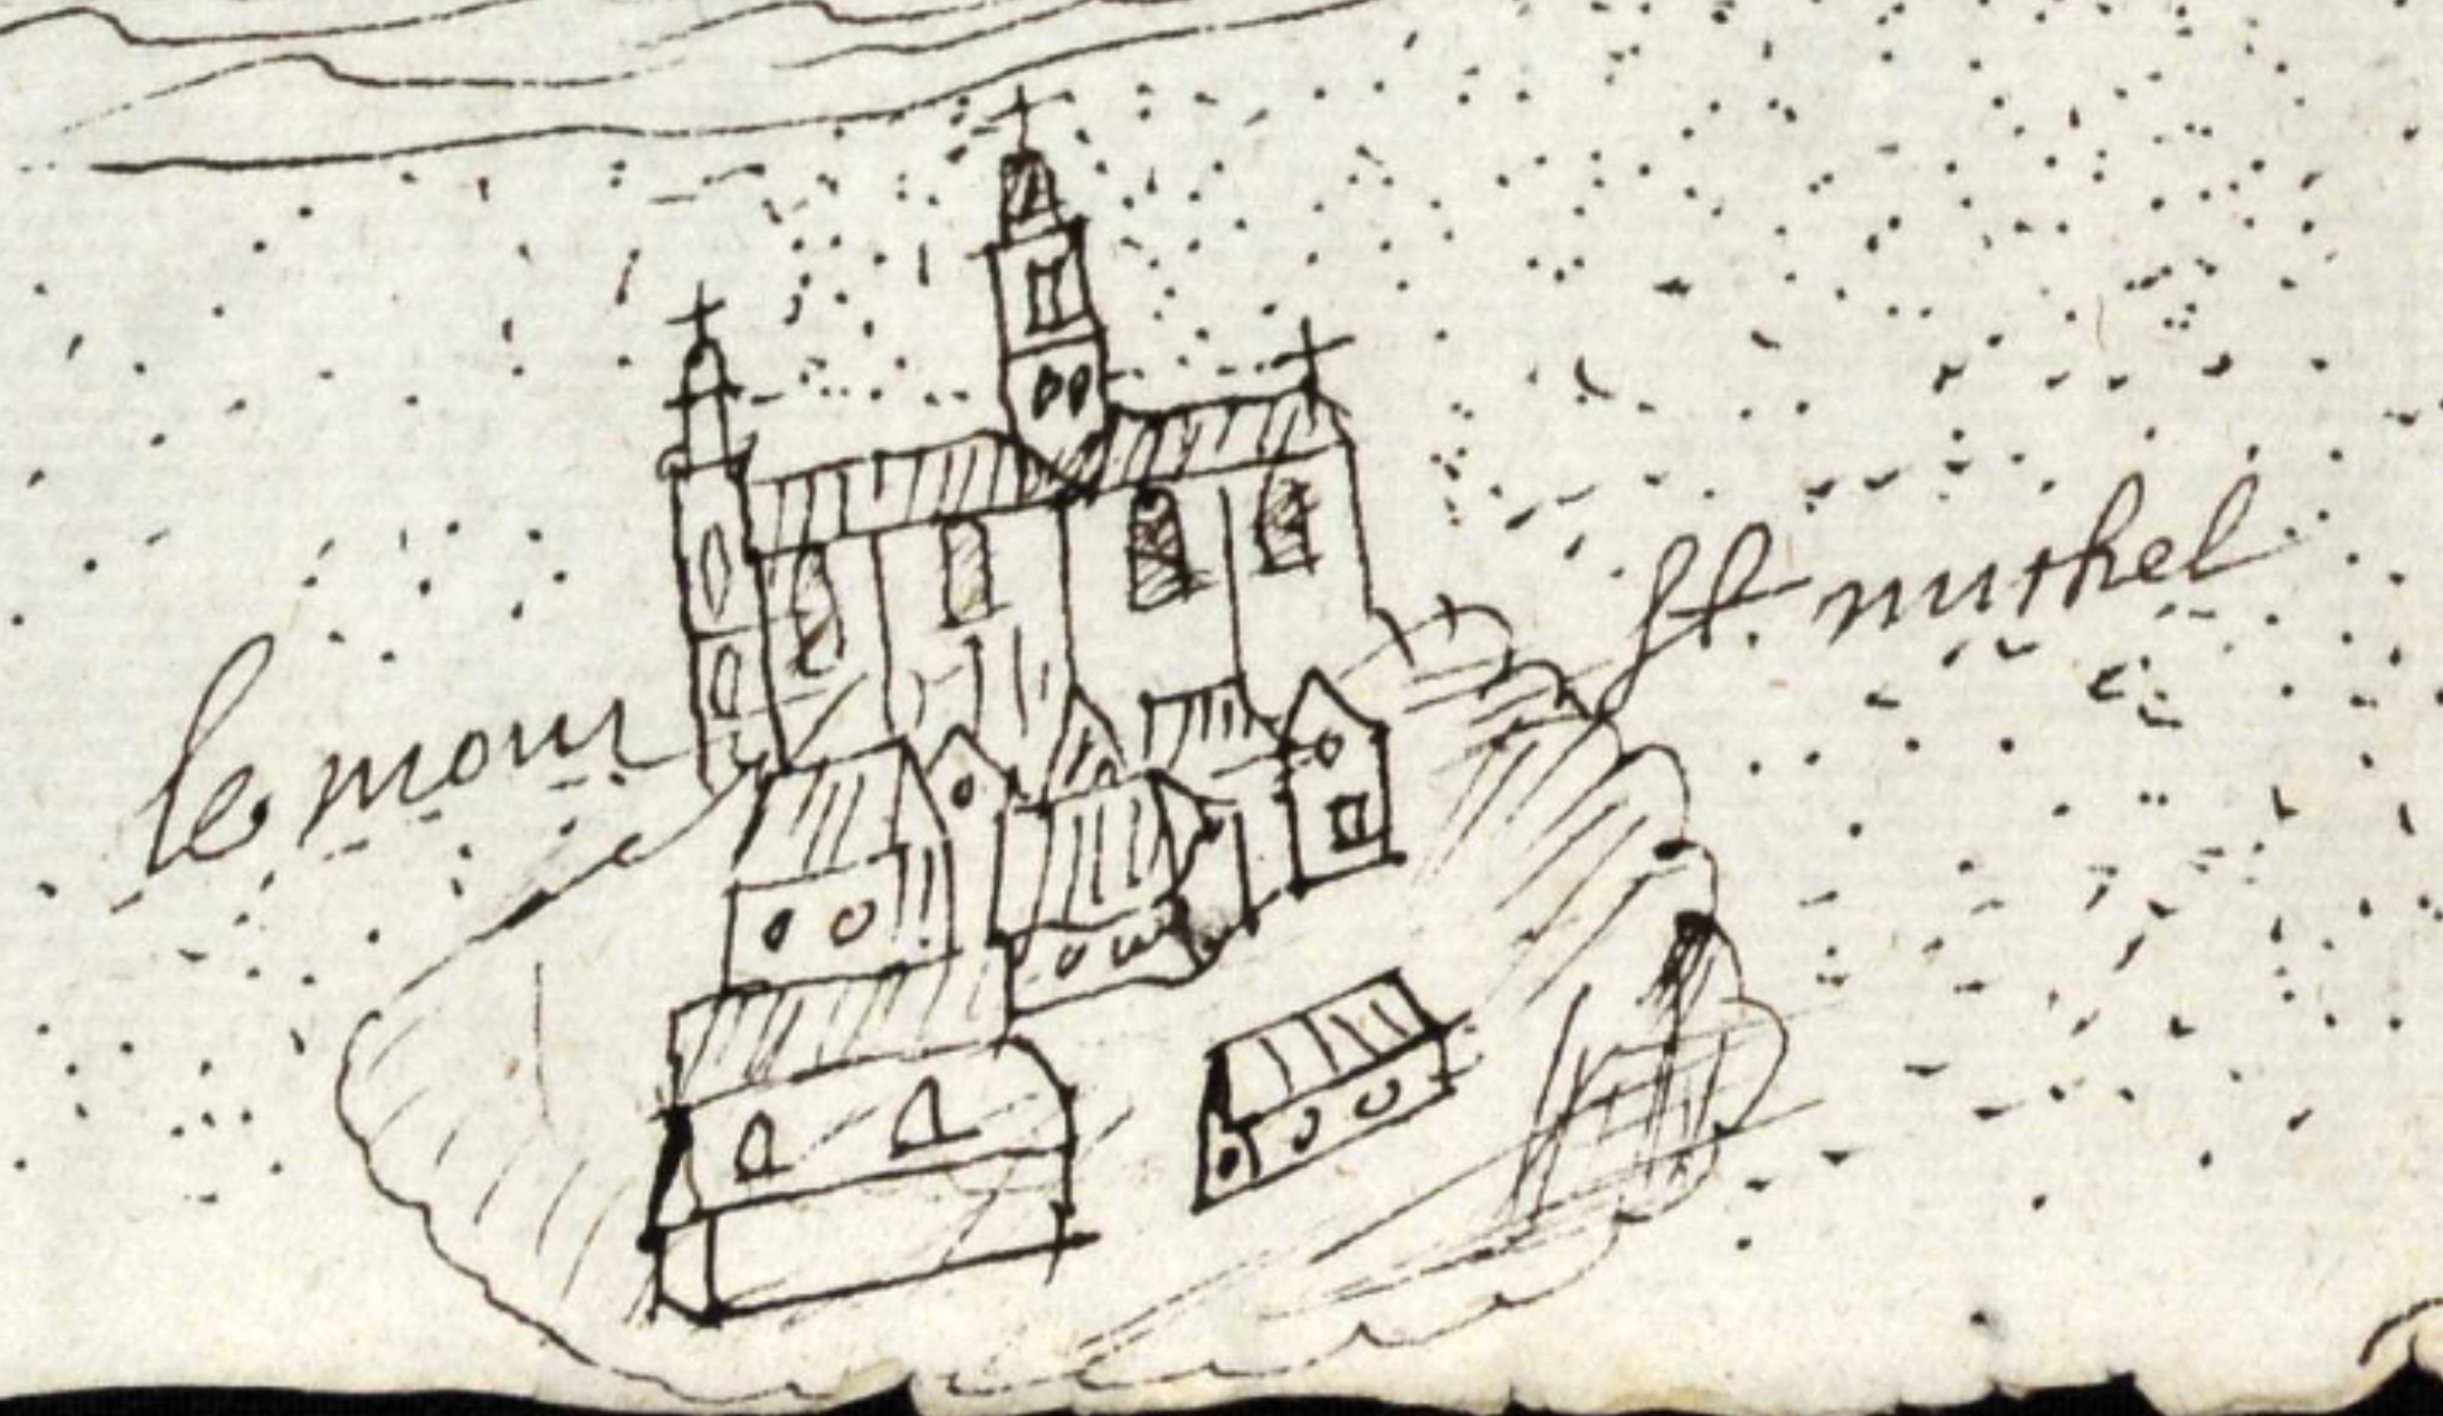 Archives départementales du Calvados, Drawing of the Saint-Léonard Parish, Mont-Saint-Michel, and Avranches (1634) - detail of Mont-Saint-Michel, available here
